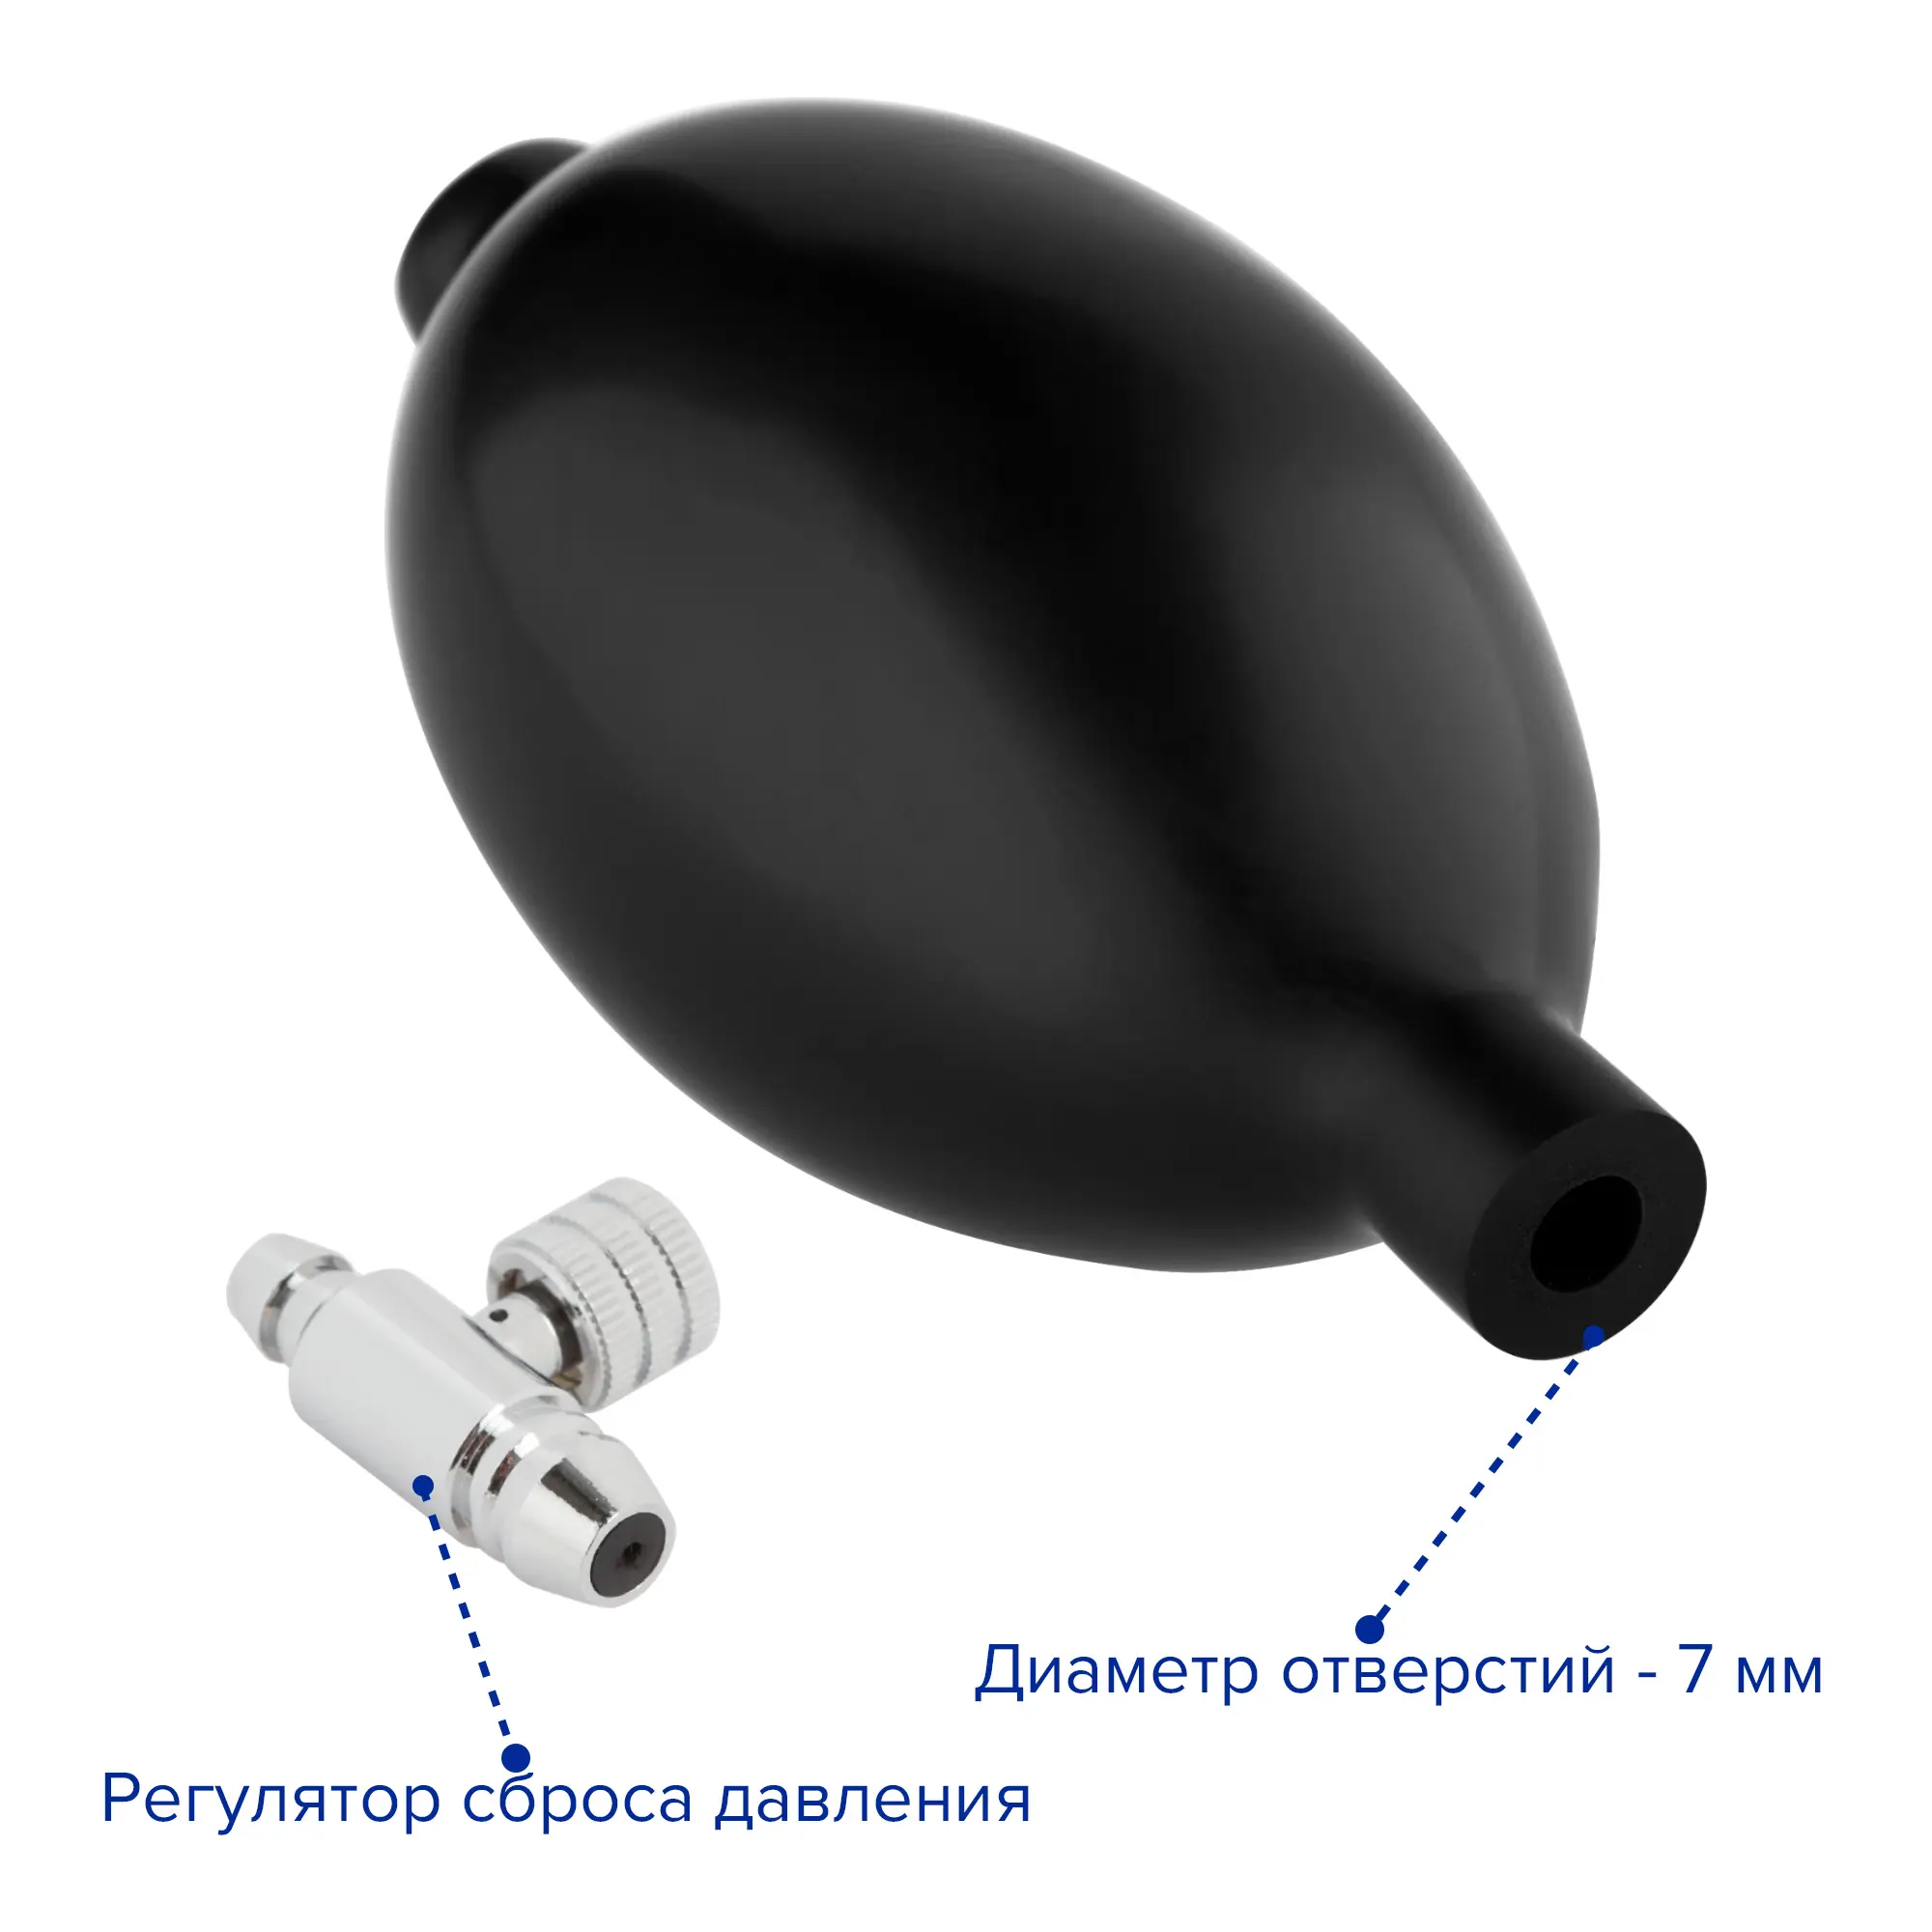 Груша для тонометра и воздушный клапан с вентилем, Apexmed